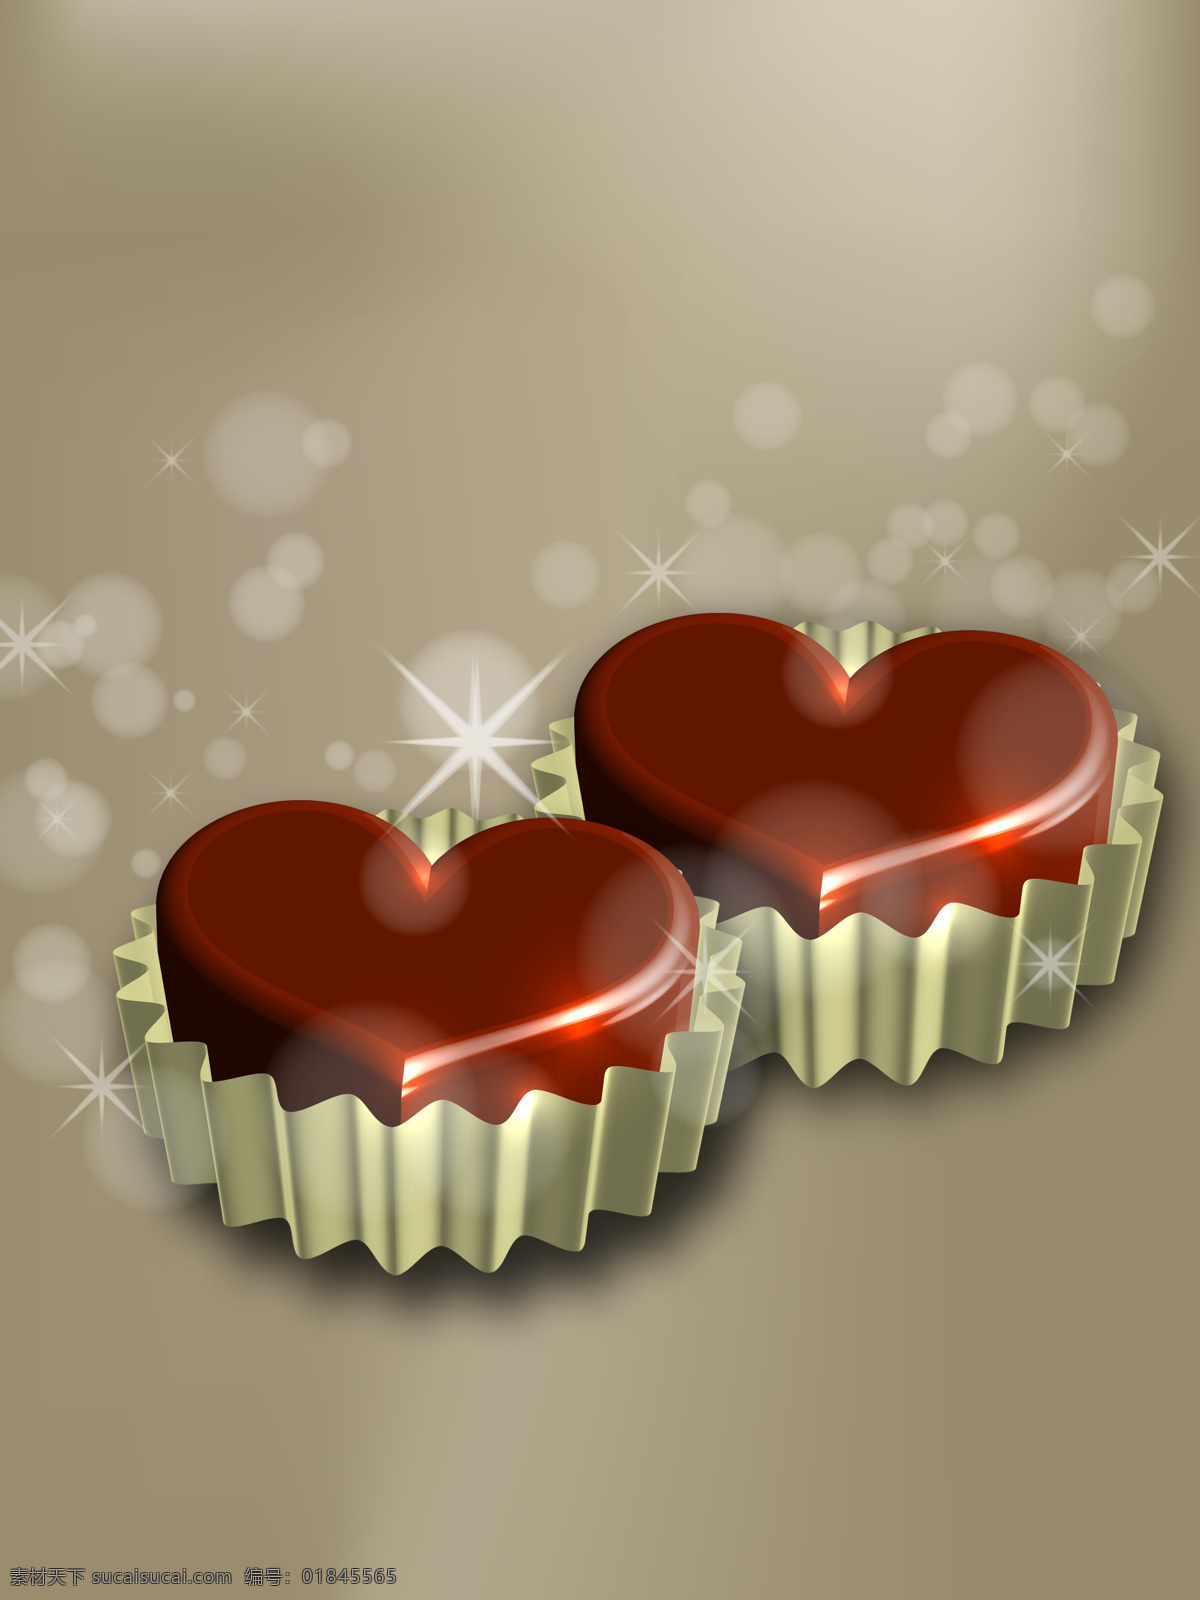 心 型 巧克力 蛋糕 底纹边框 礼盒 心形 心型 移门 心型巧克力 移门图案 家居装饰素材